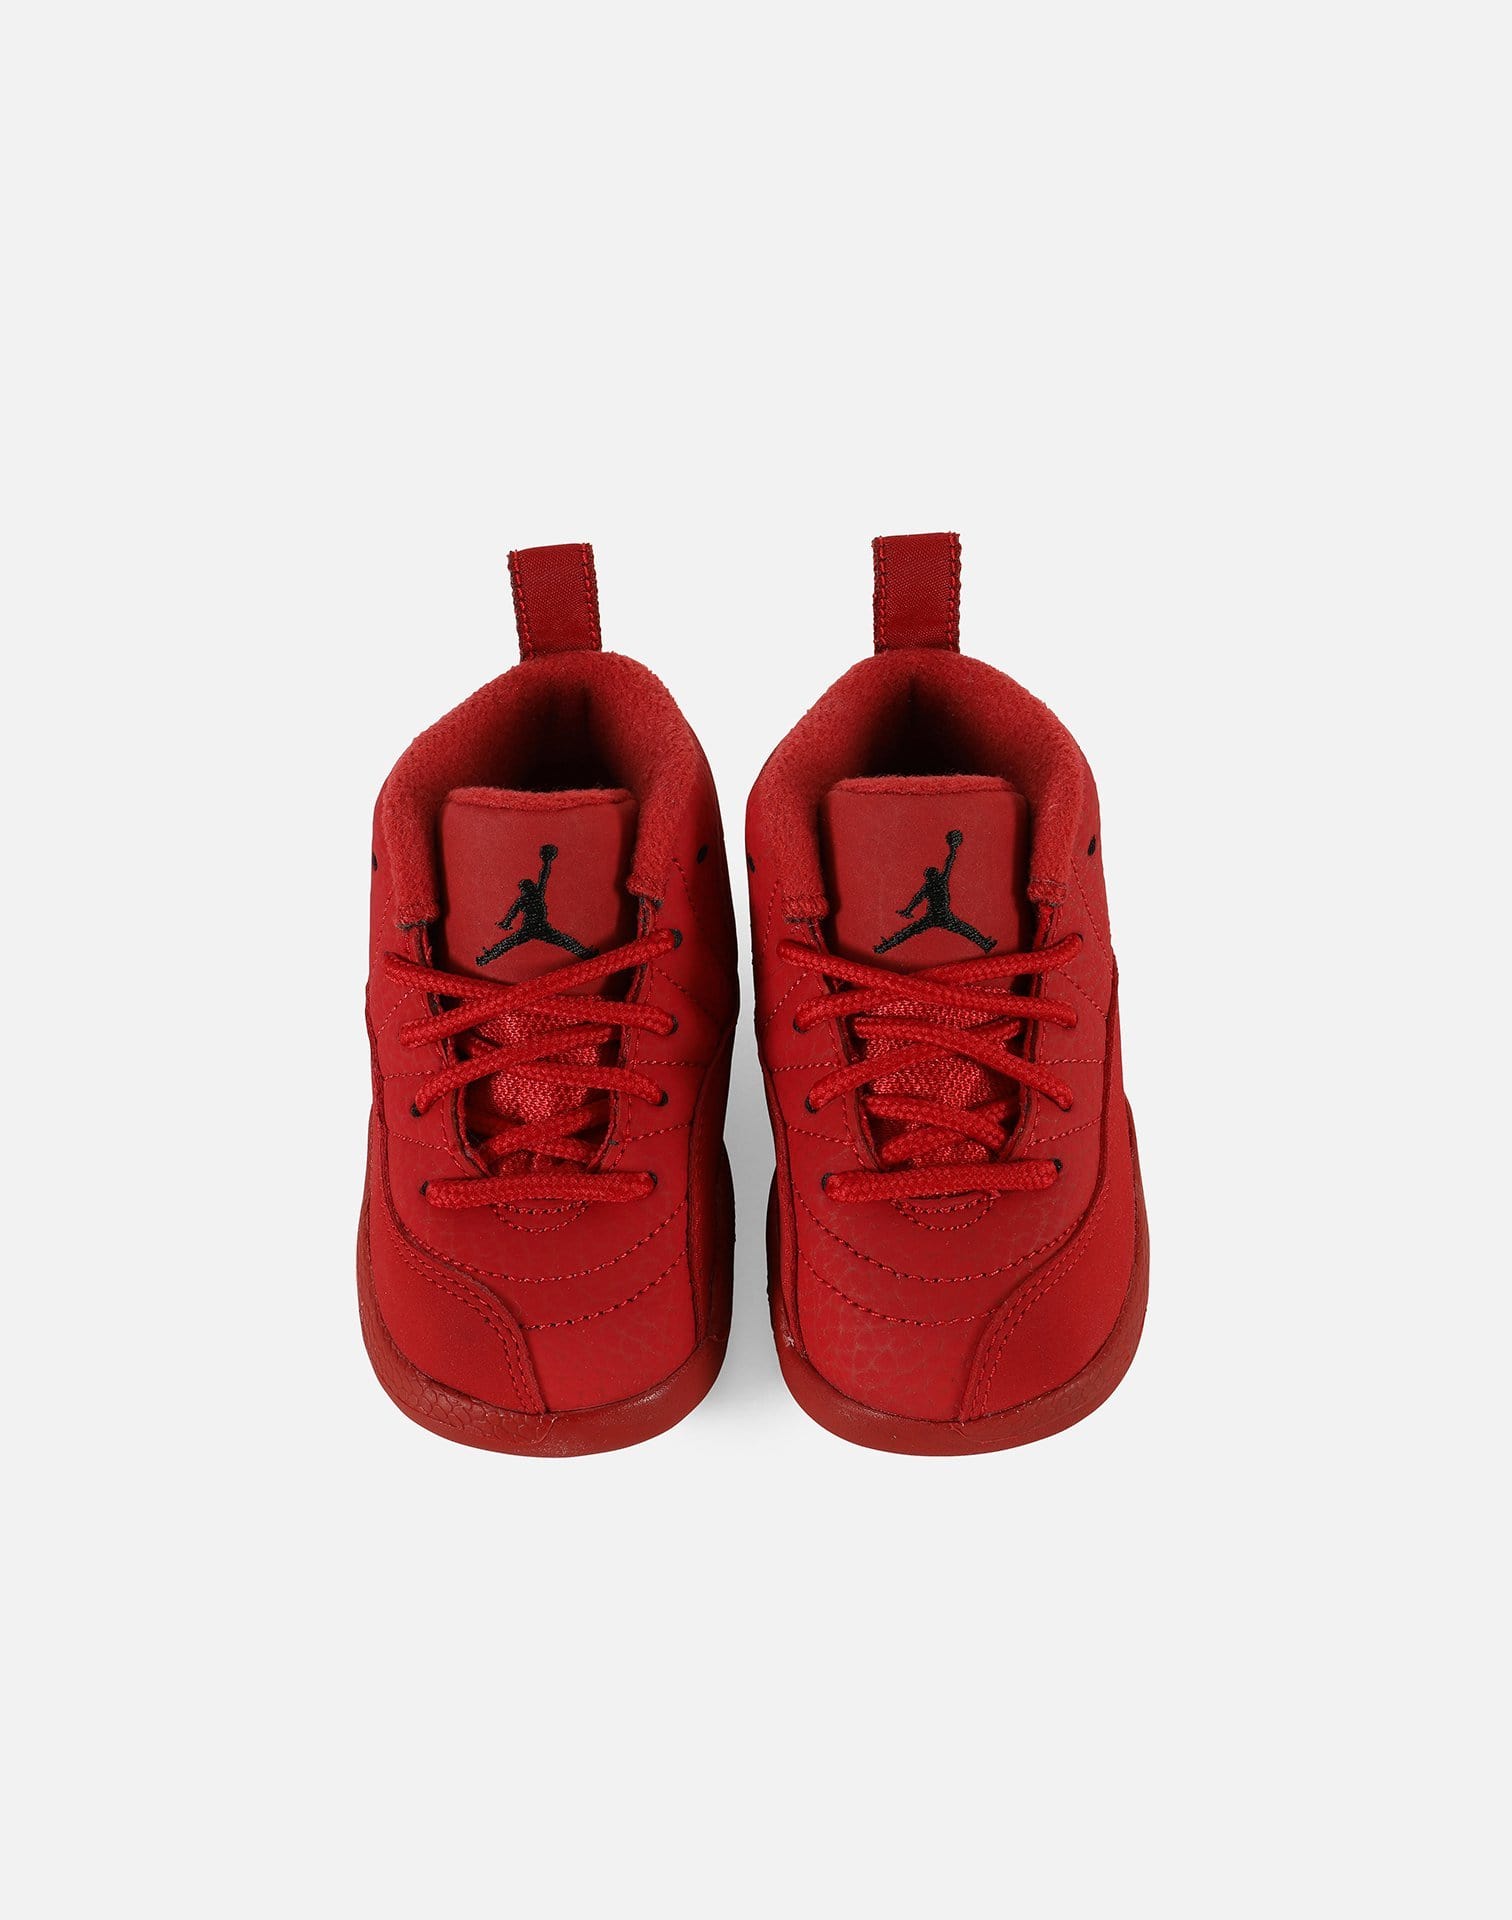 Jordan Air Jordan Retro 12 'Gym Red' Infant